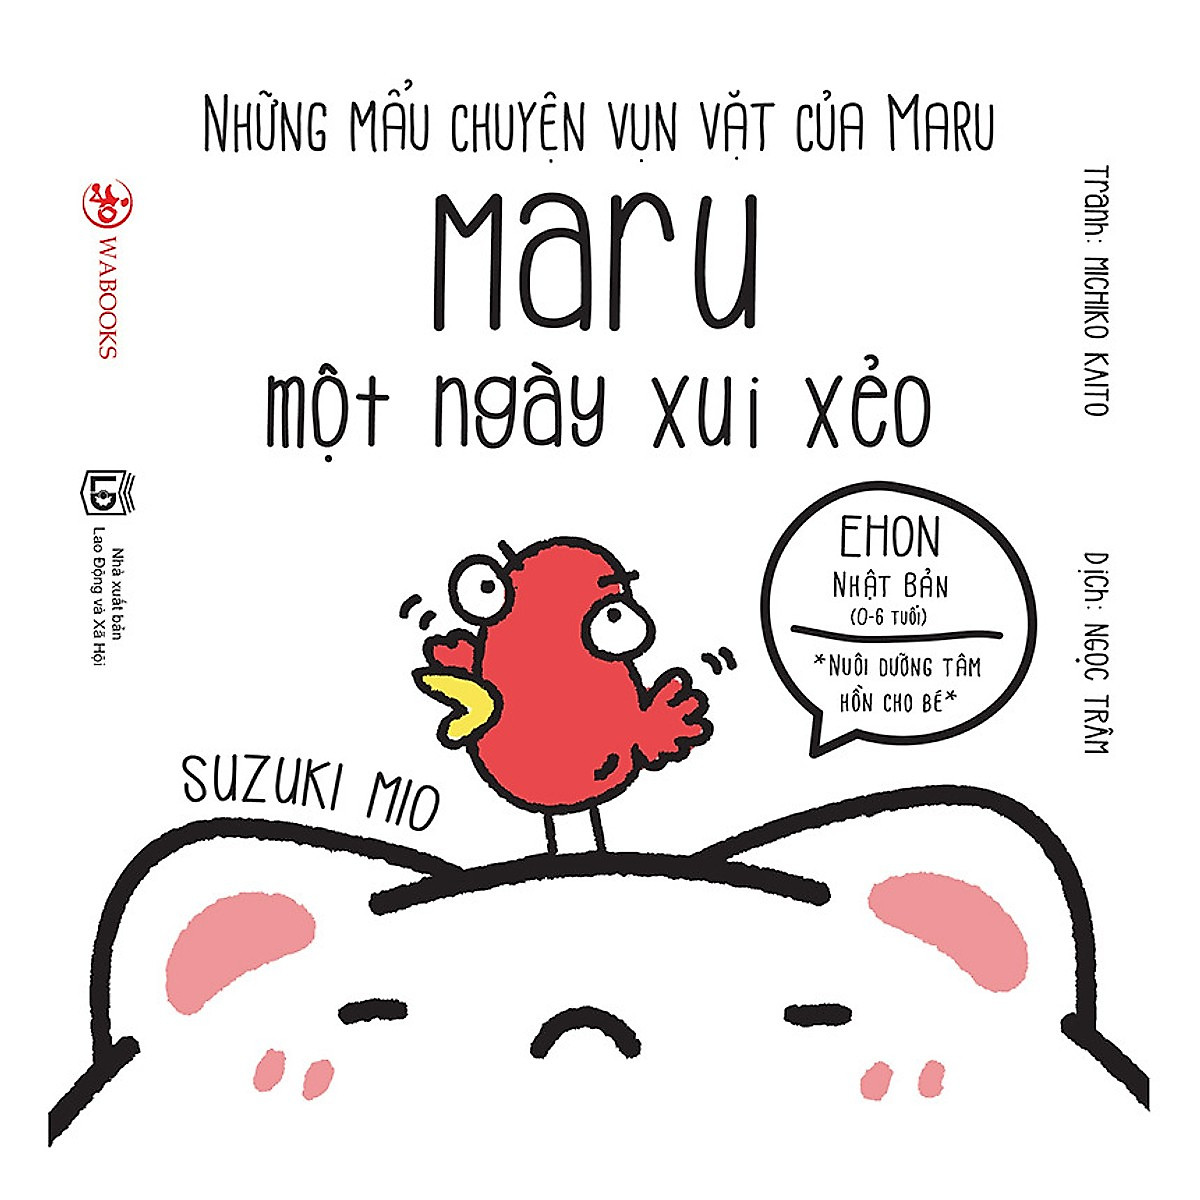 Ehon Nhật Bản - Nuôi dưỡng tâm hồn cho bé - Những mẩu chuyện vụn vặt của Maru ( trọn bộ 6 cuốn ) tặng kèm 1 tẩy hình con vật như hình